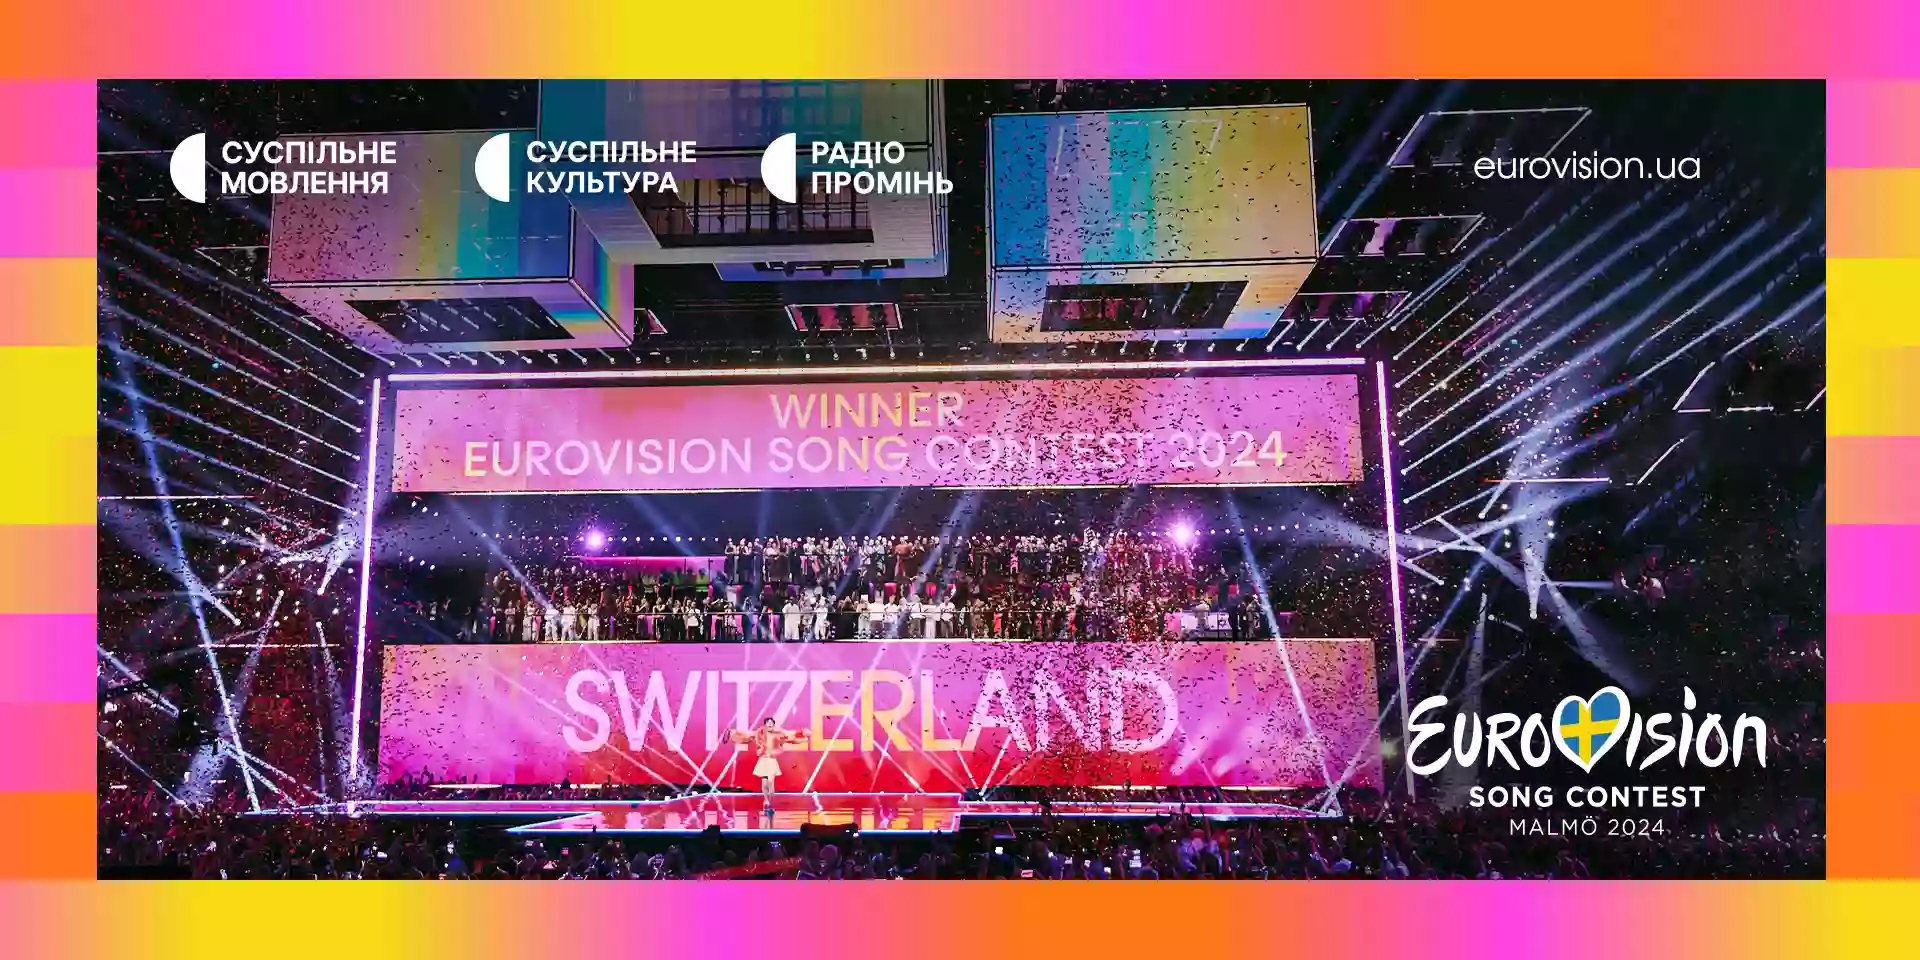 Частка показу фіналу «Євробачення-2024» на «Суспільне Культура» сягнула понад 28%